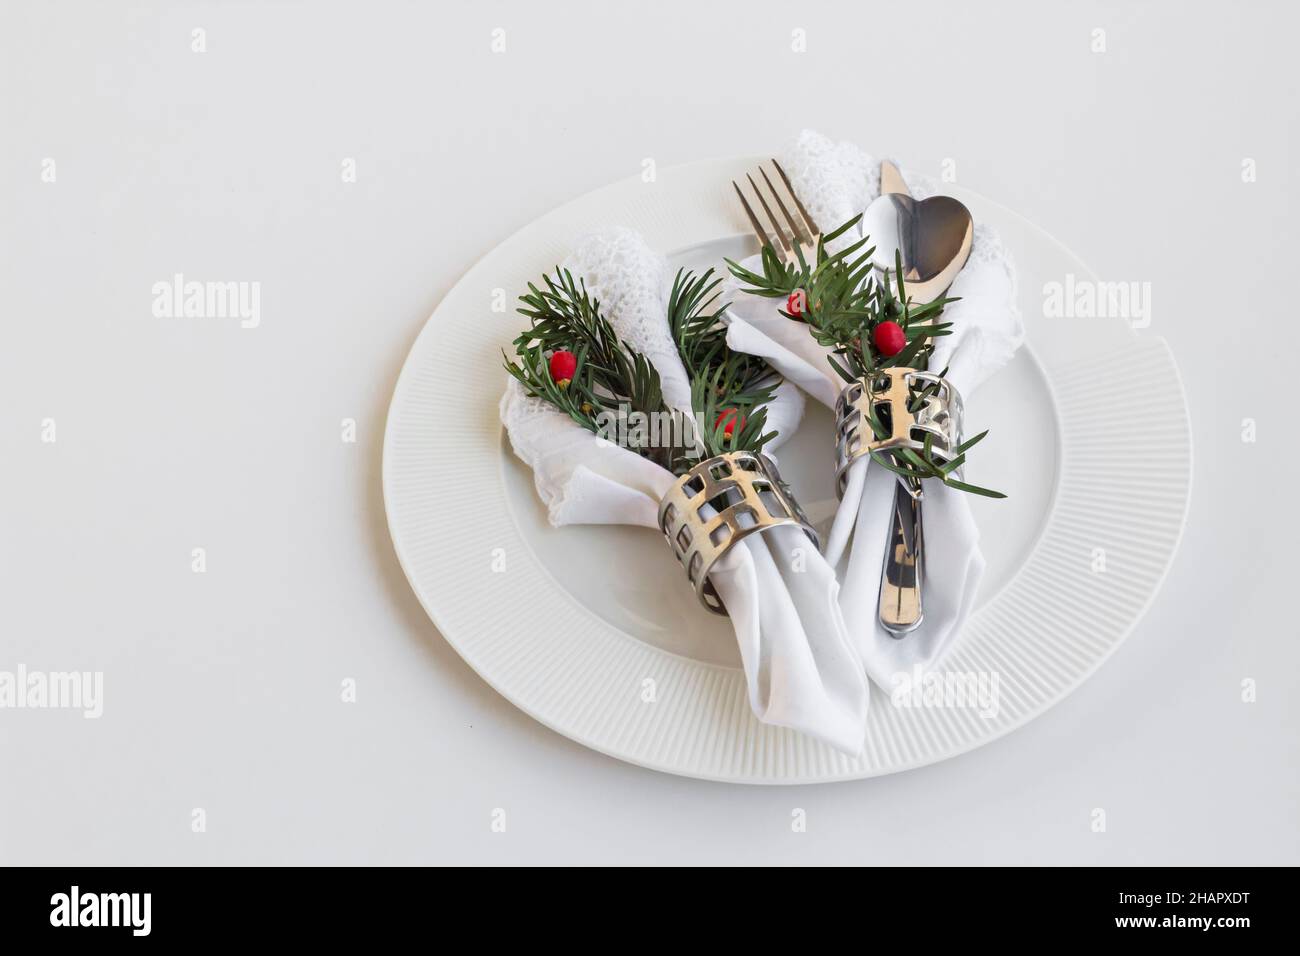 Menu de Noël ou du nouvel an avec des serviettes en tissu blanc, des ronds de serviettes et des couverts dans une assiette sur blanc Banque D'Images